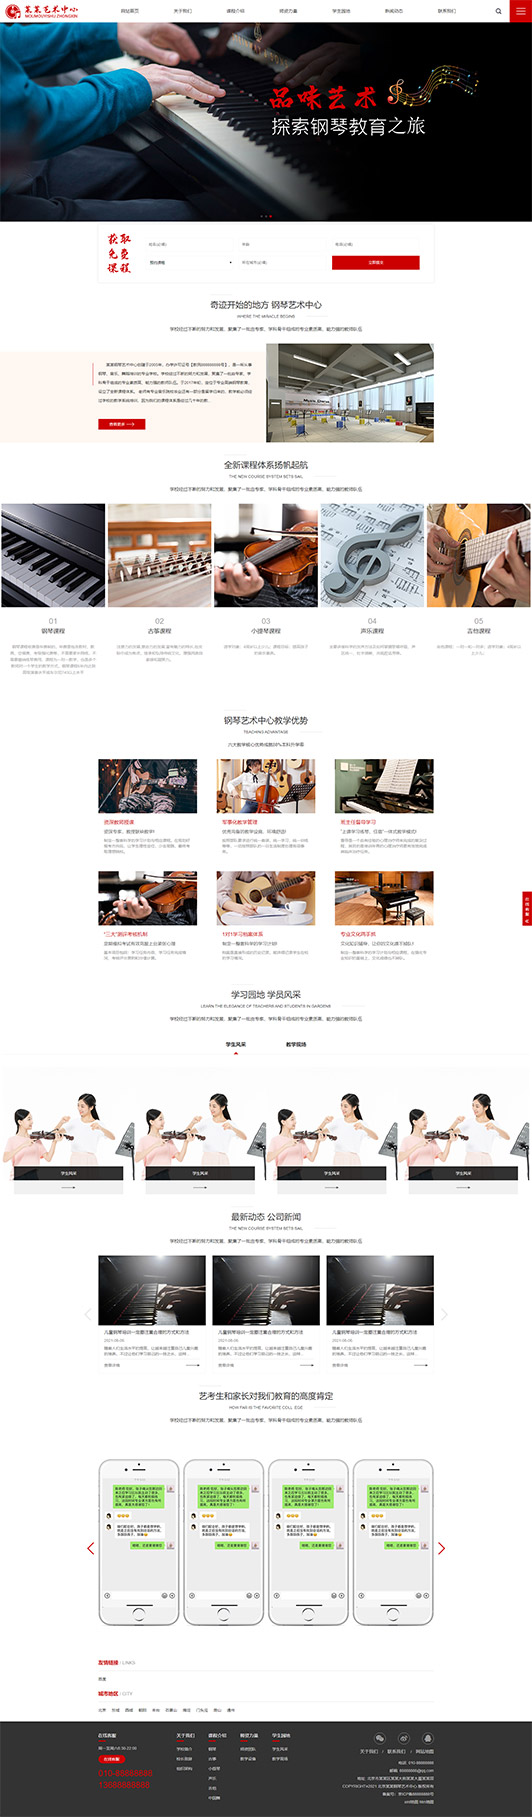 潮州钢琴艺术培训公司响应式企业网站